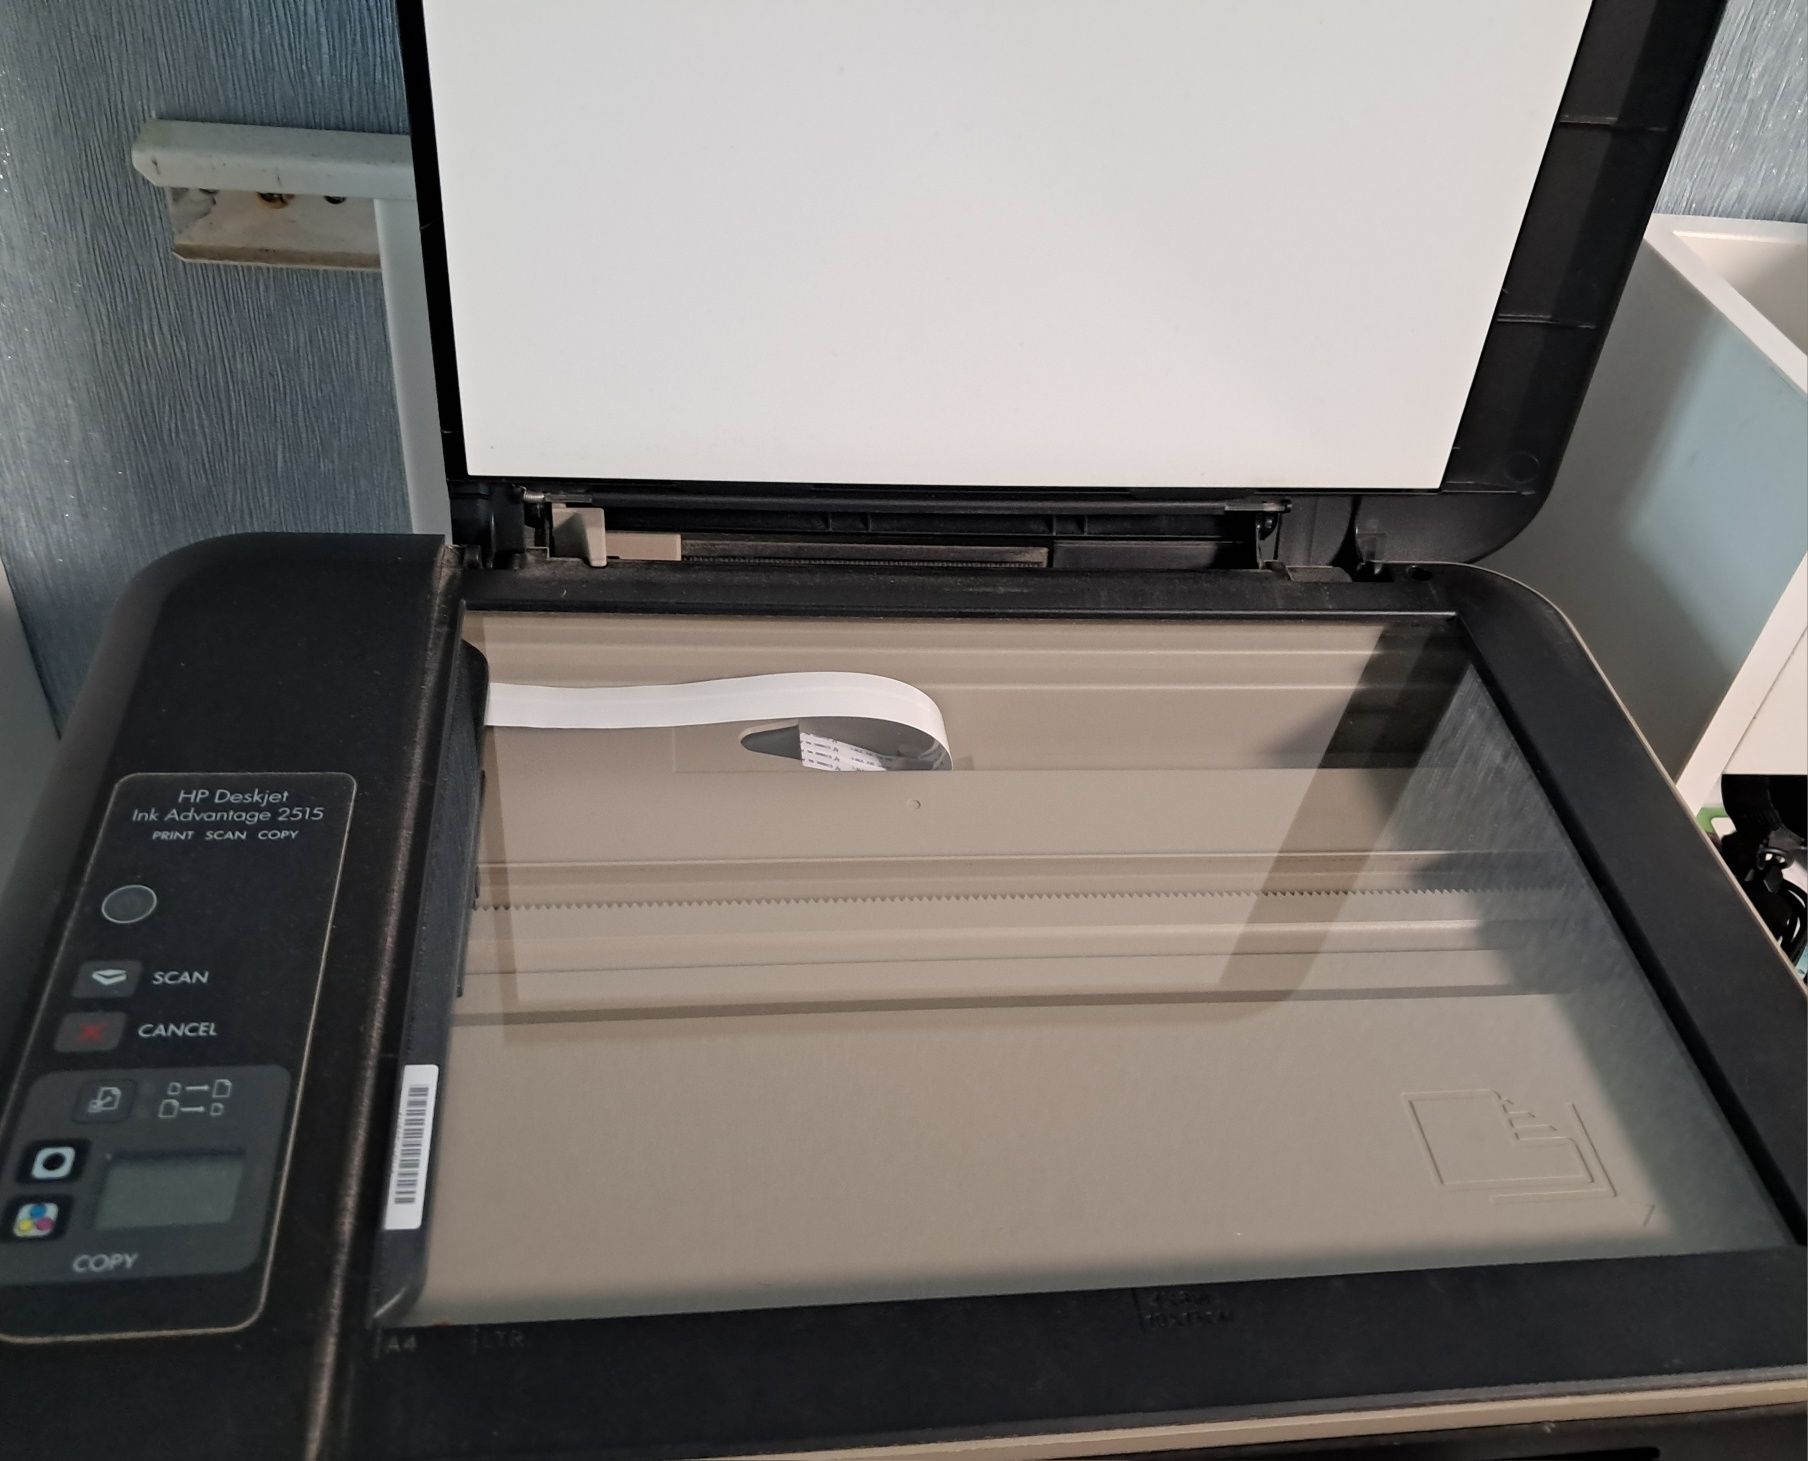 принтер сканер ксерокс струйный цветной  МФУ HP Deskjet Advantage 2515